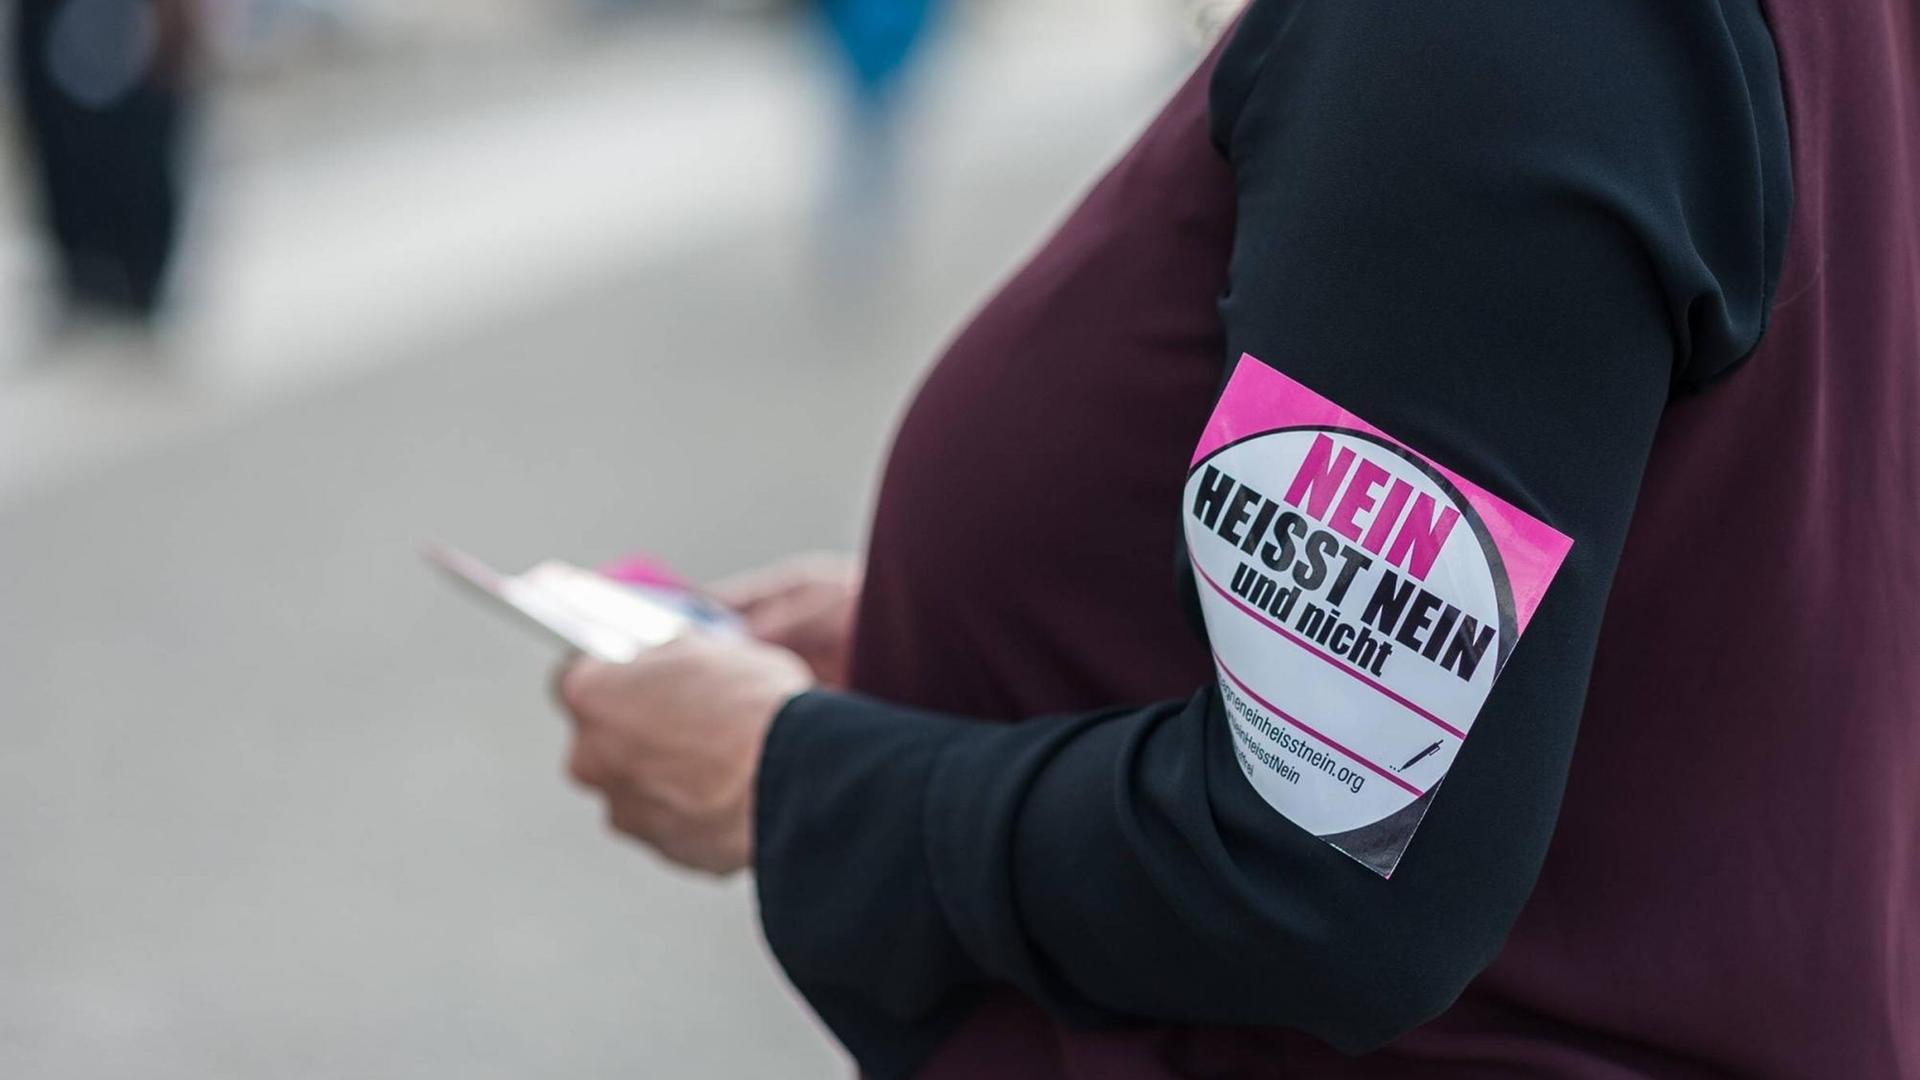 Nein heisst Nein steht während einer Kundgebung in Berlin, auf dem Aufkleber einer Teilnehmerin.